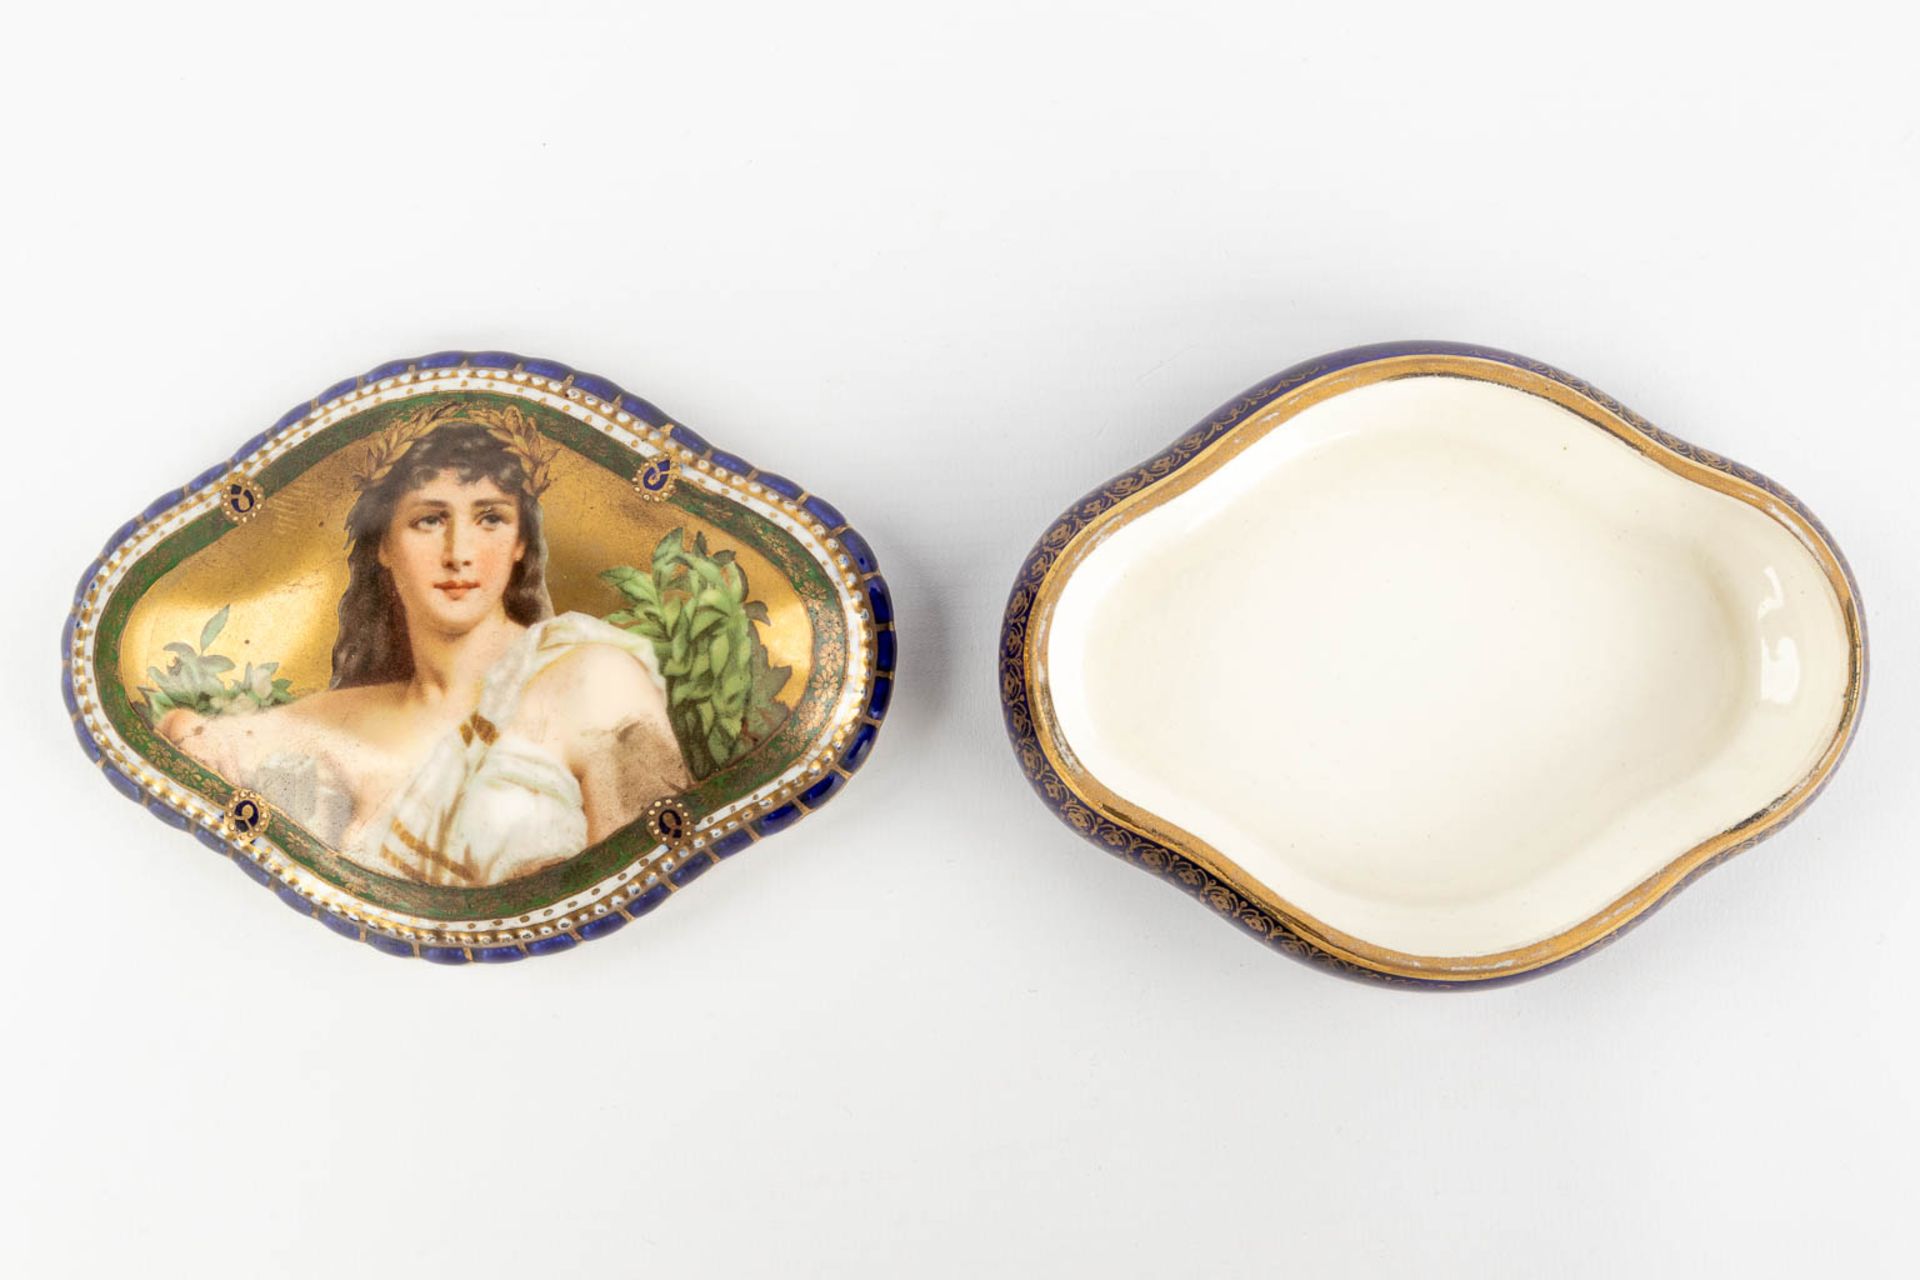 Sitzendorf & 'Royal Vienna' a set of 2 porcelain items. (L:12 x W:20 x H:23 cm) - Image 13 of 22